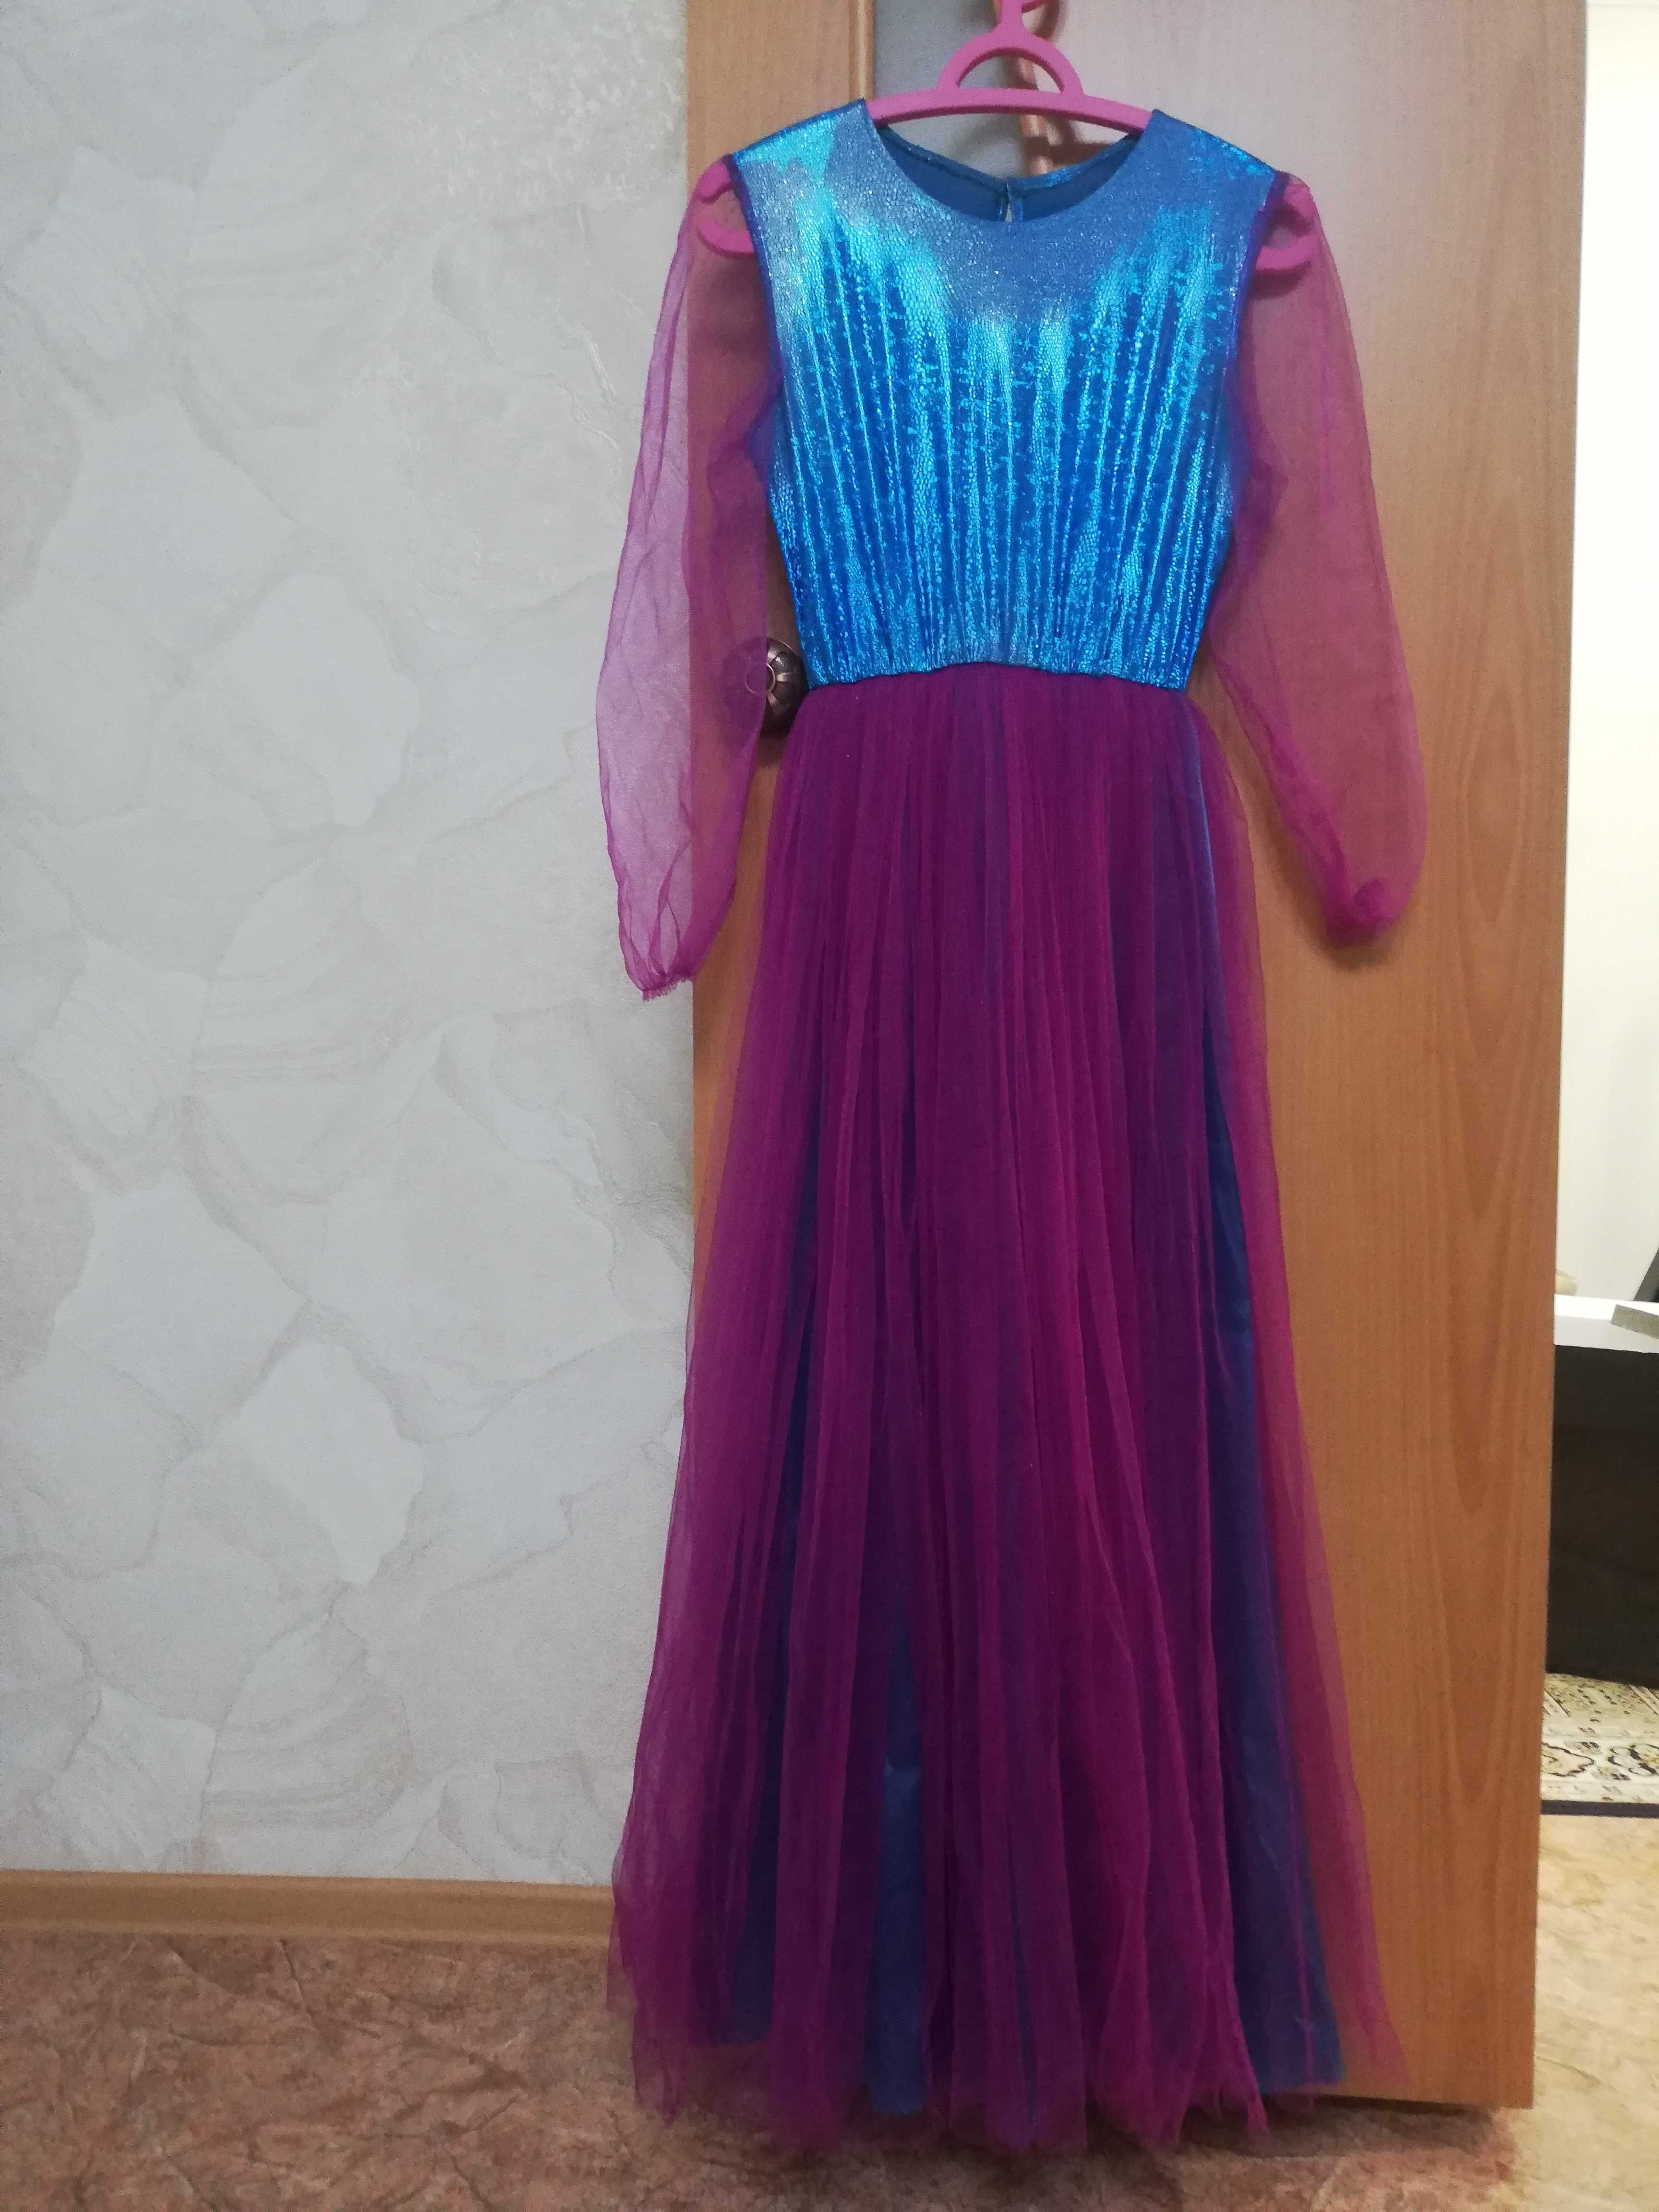 Продам платье казахское для девочки на 10-15 лет б/у